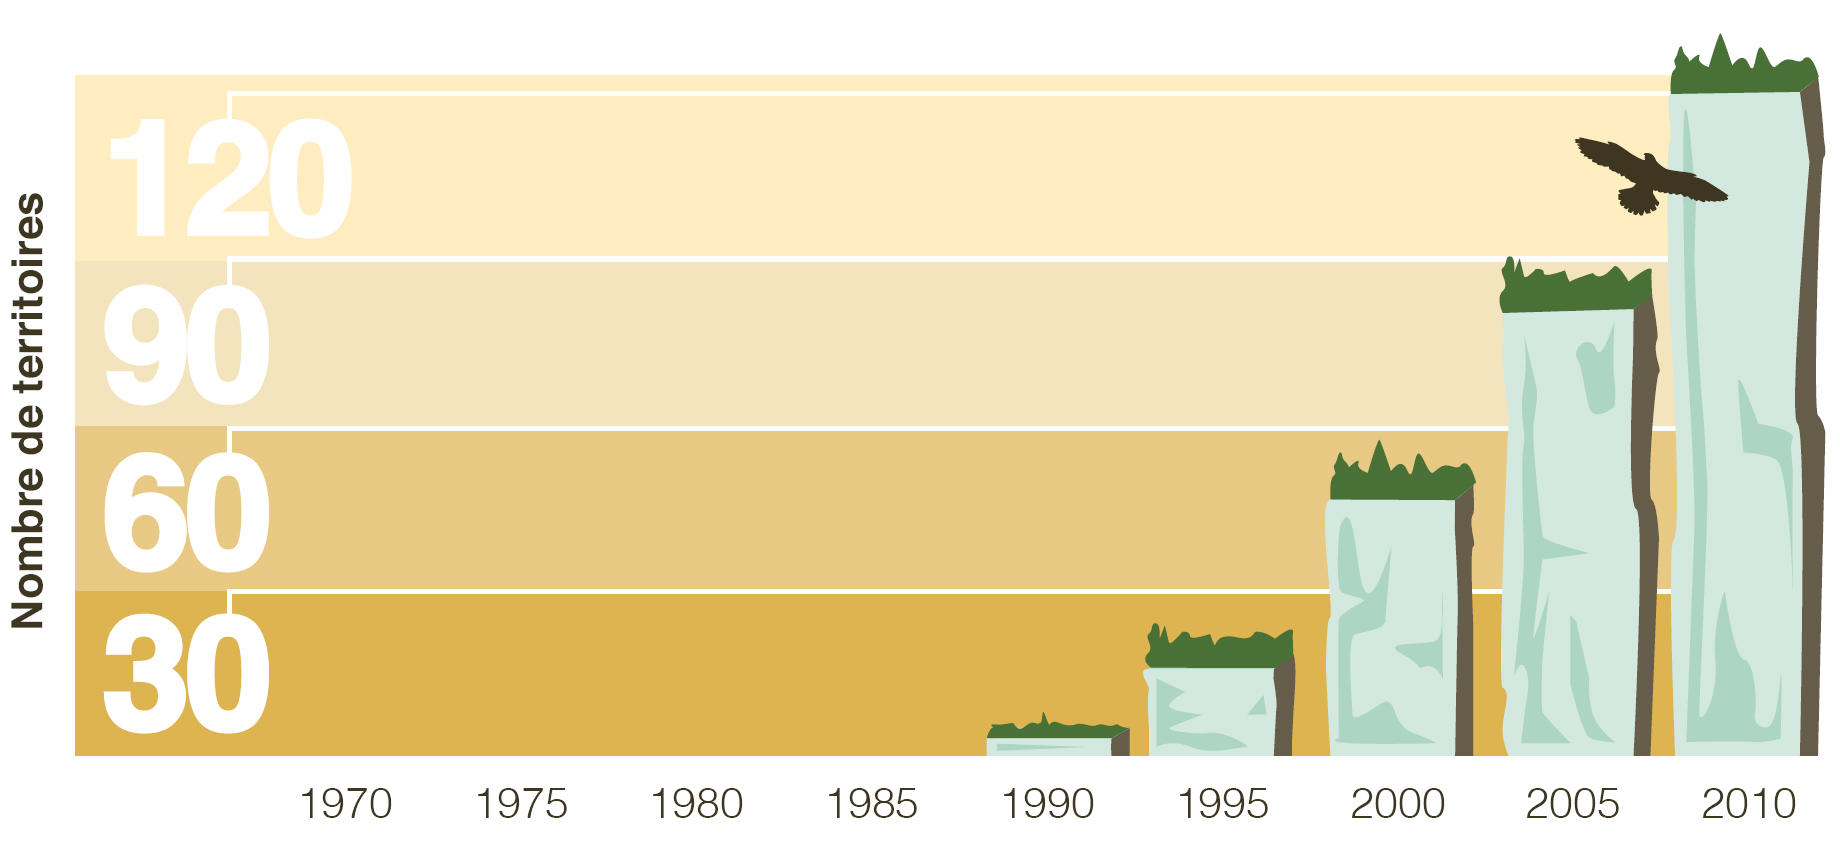 Ce diagramme à barres démontre une augmentation du nombre de territoires du faucin pelerin en Ontario depuis les 40 dernières années.